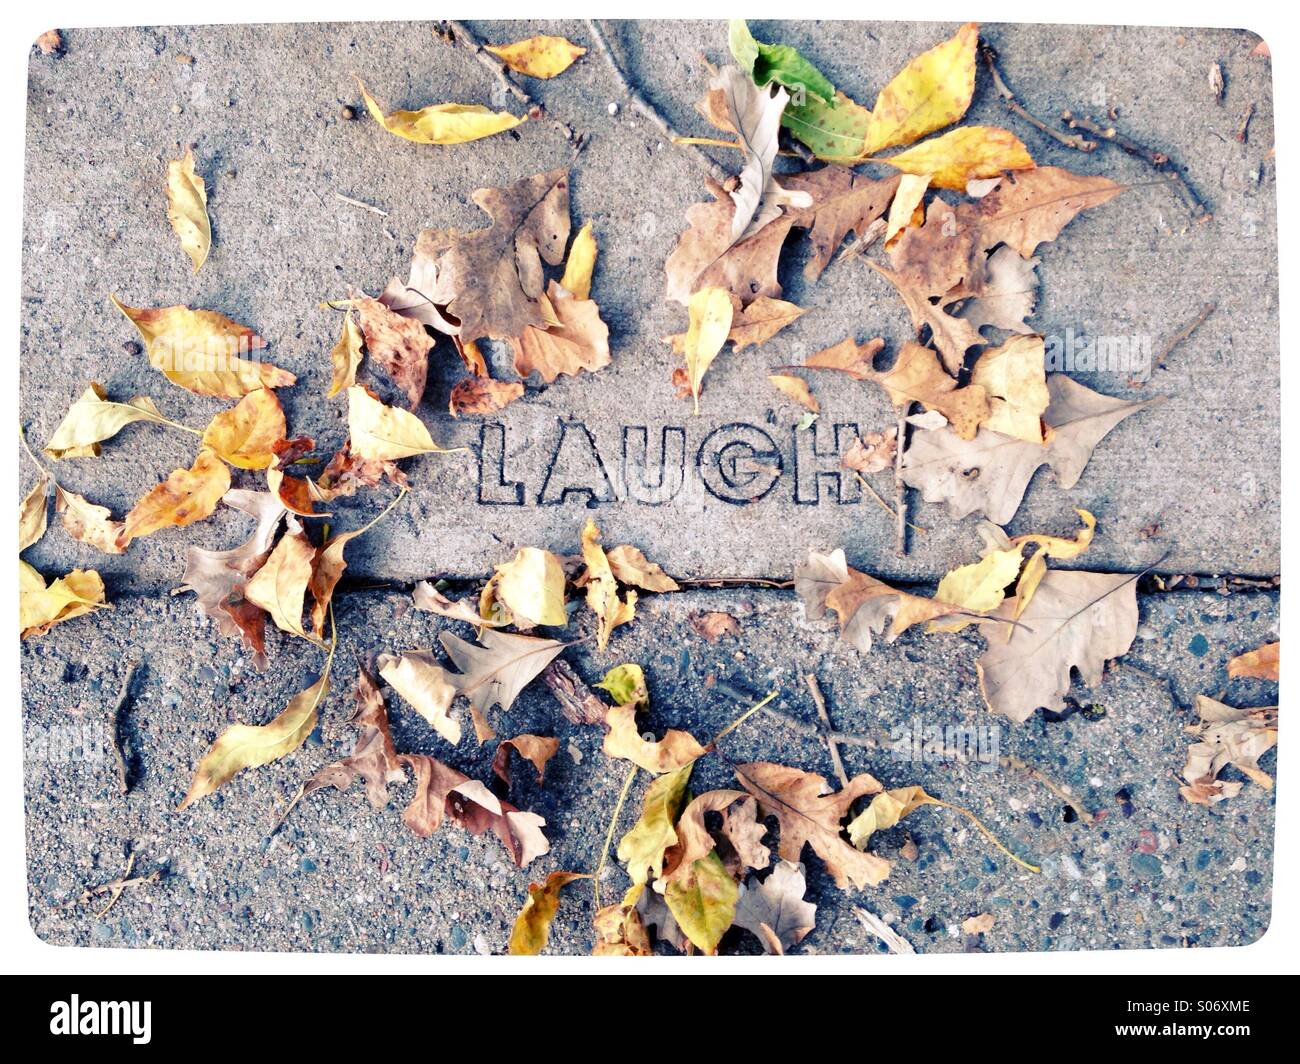 Das Wort "Lachen" geschnitzt in einen Bürgersteig. Stockfoto